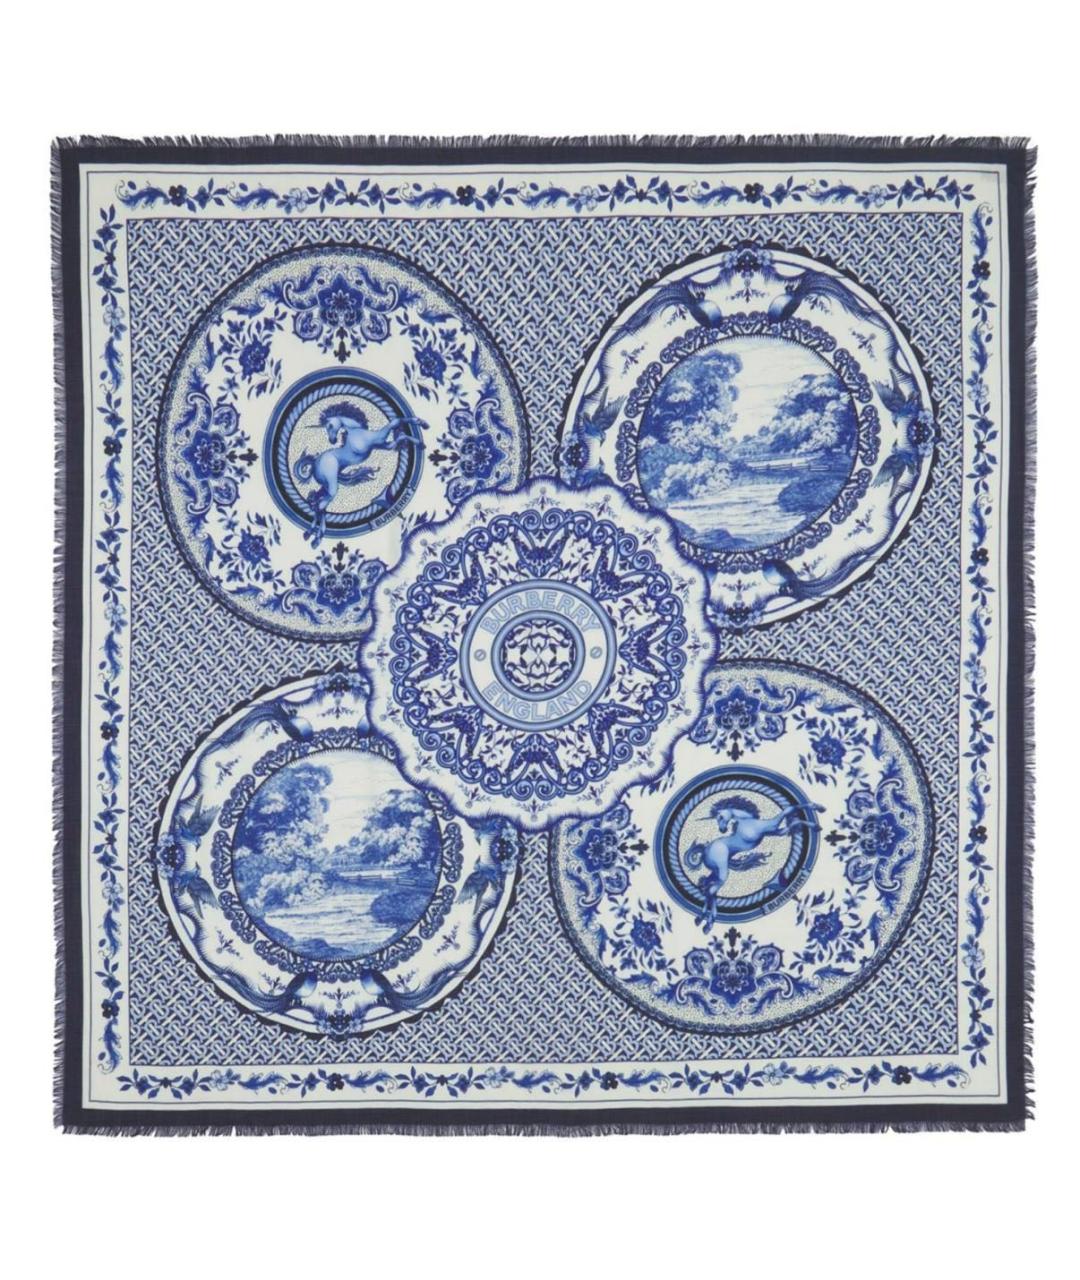 BURBERRY Синий кашемировый шарф, фото 1